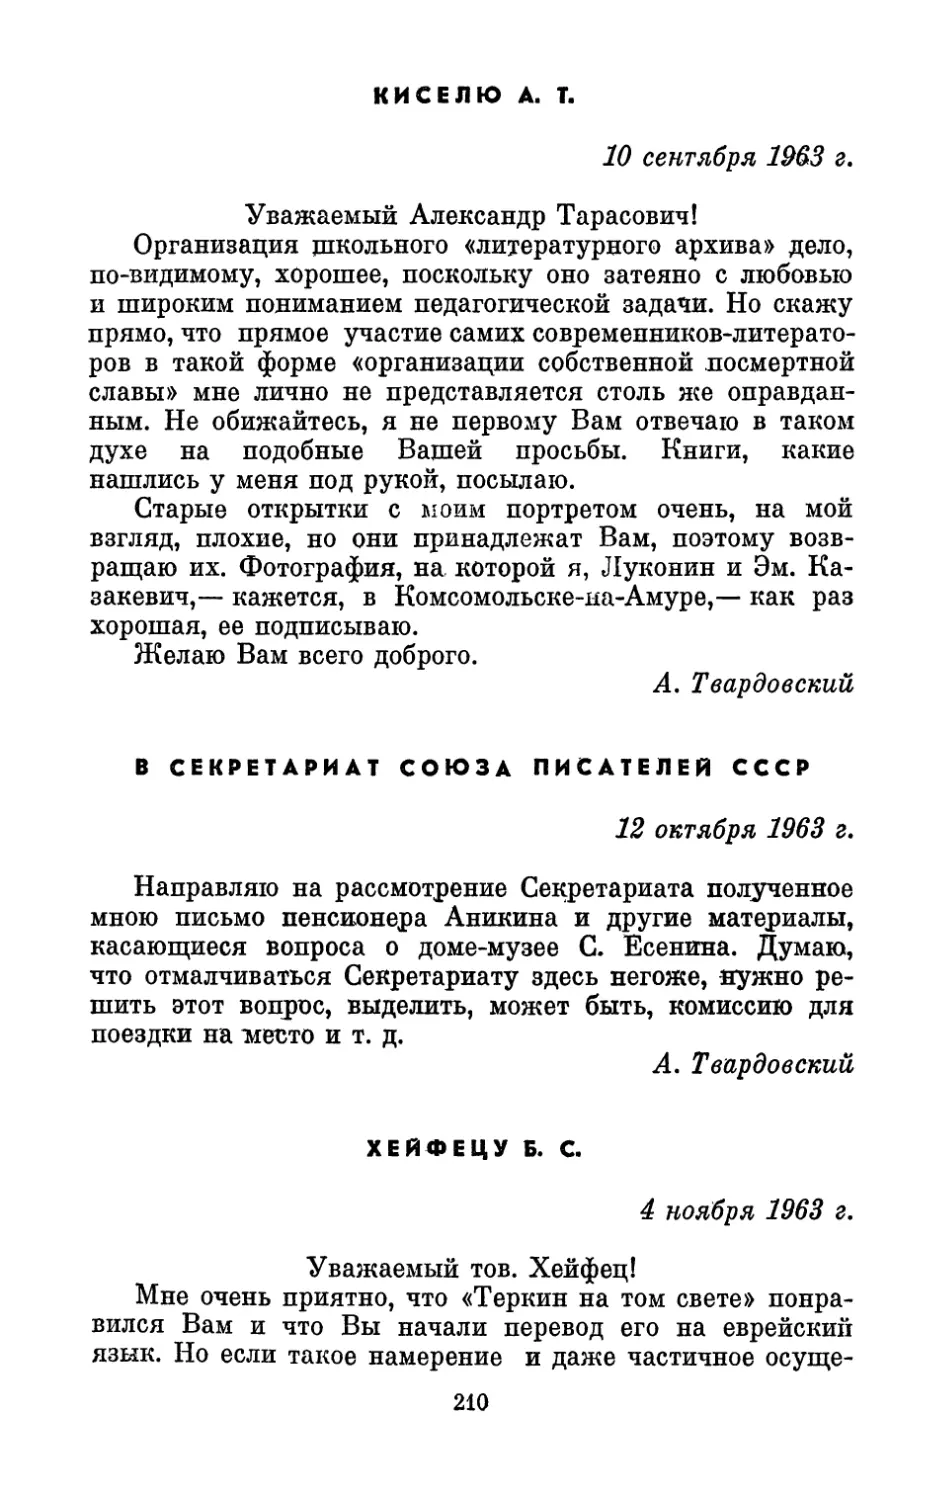 Киселю А. Т., 10 сентября 1963 г.
В Секретариат Союза писателей СССР, 12 октября 1963 г.
Хейфецу Б. С., 4 ноября 1963 г.